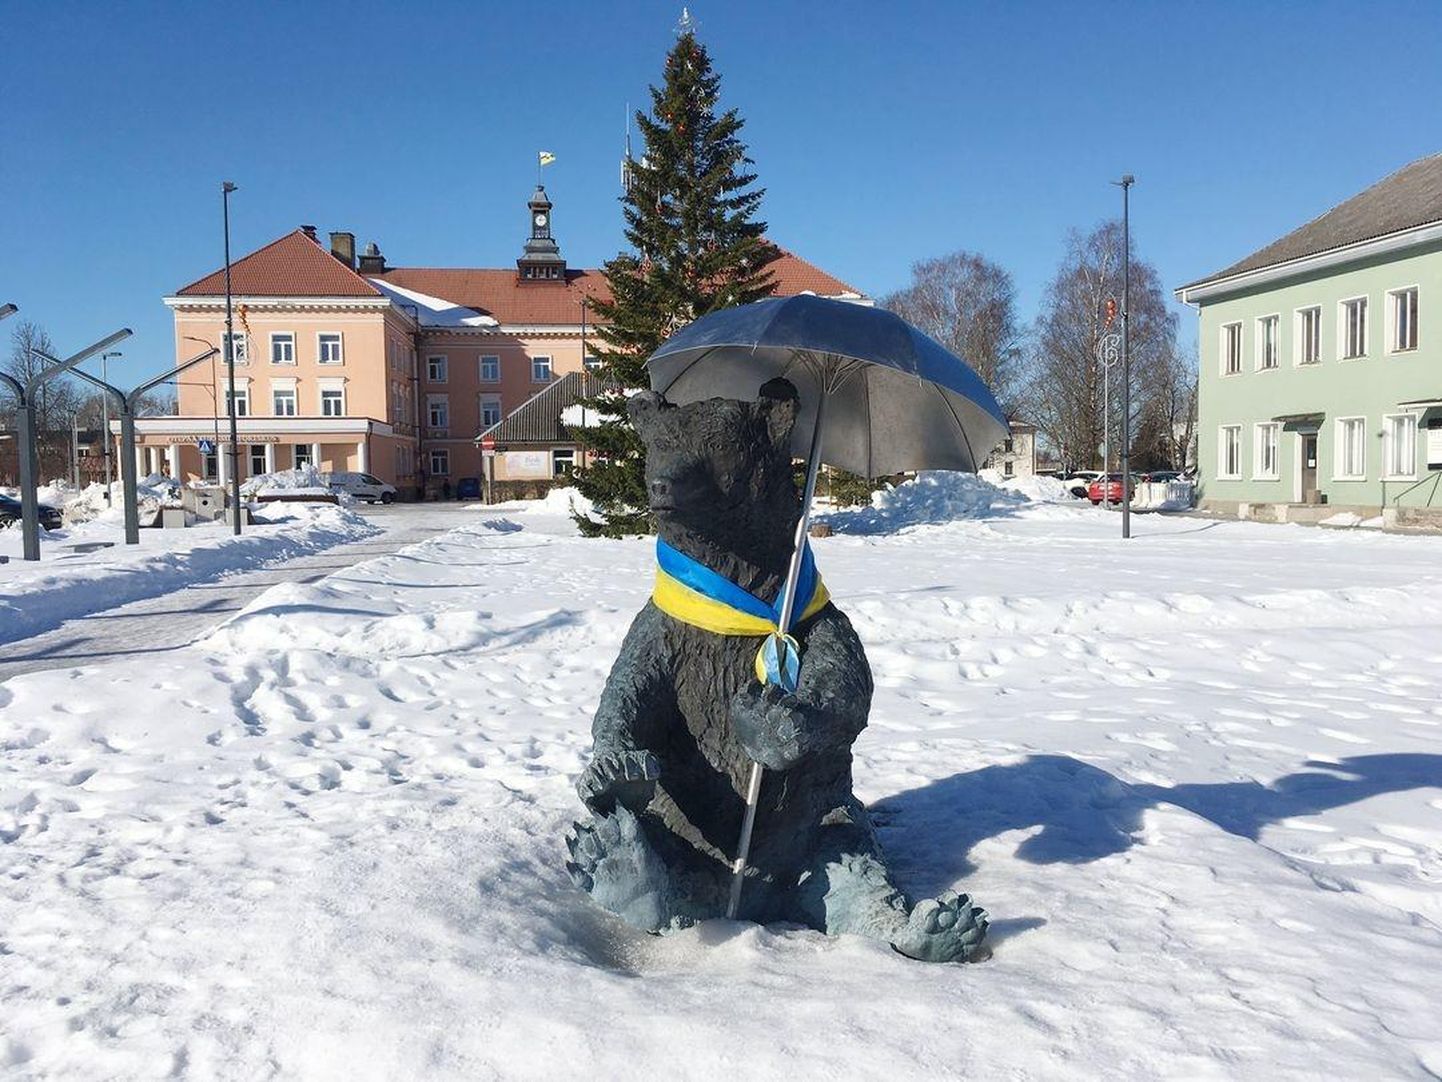 Otepää sümbolloom karu on saanud kaela Ukraina värvides salli.